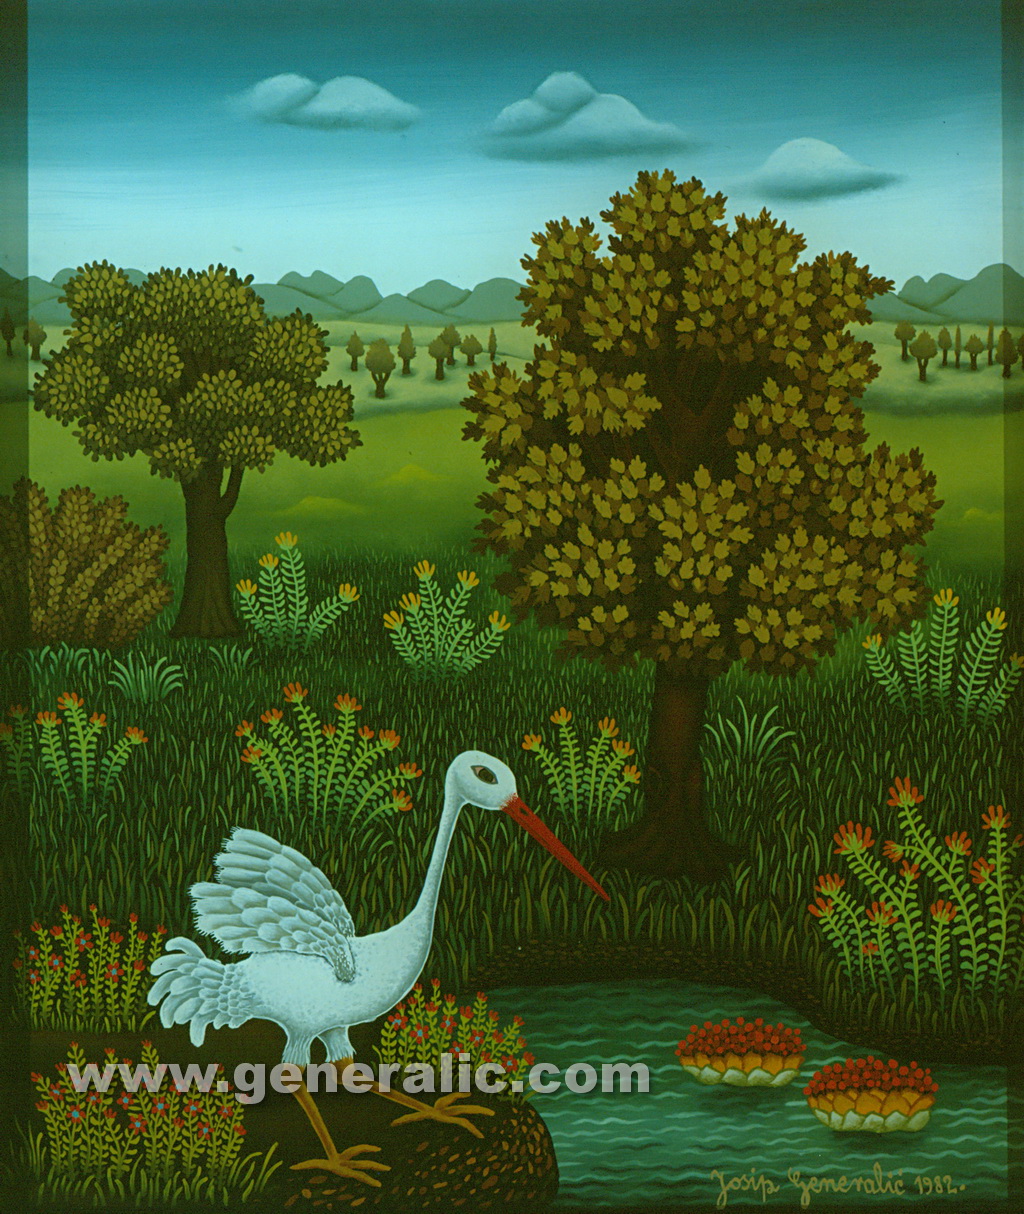 Josip Generalic, 1982, White stork, oil on glass, 36x30 cm